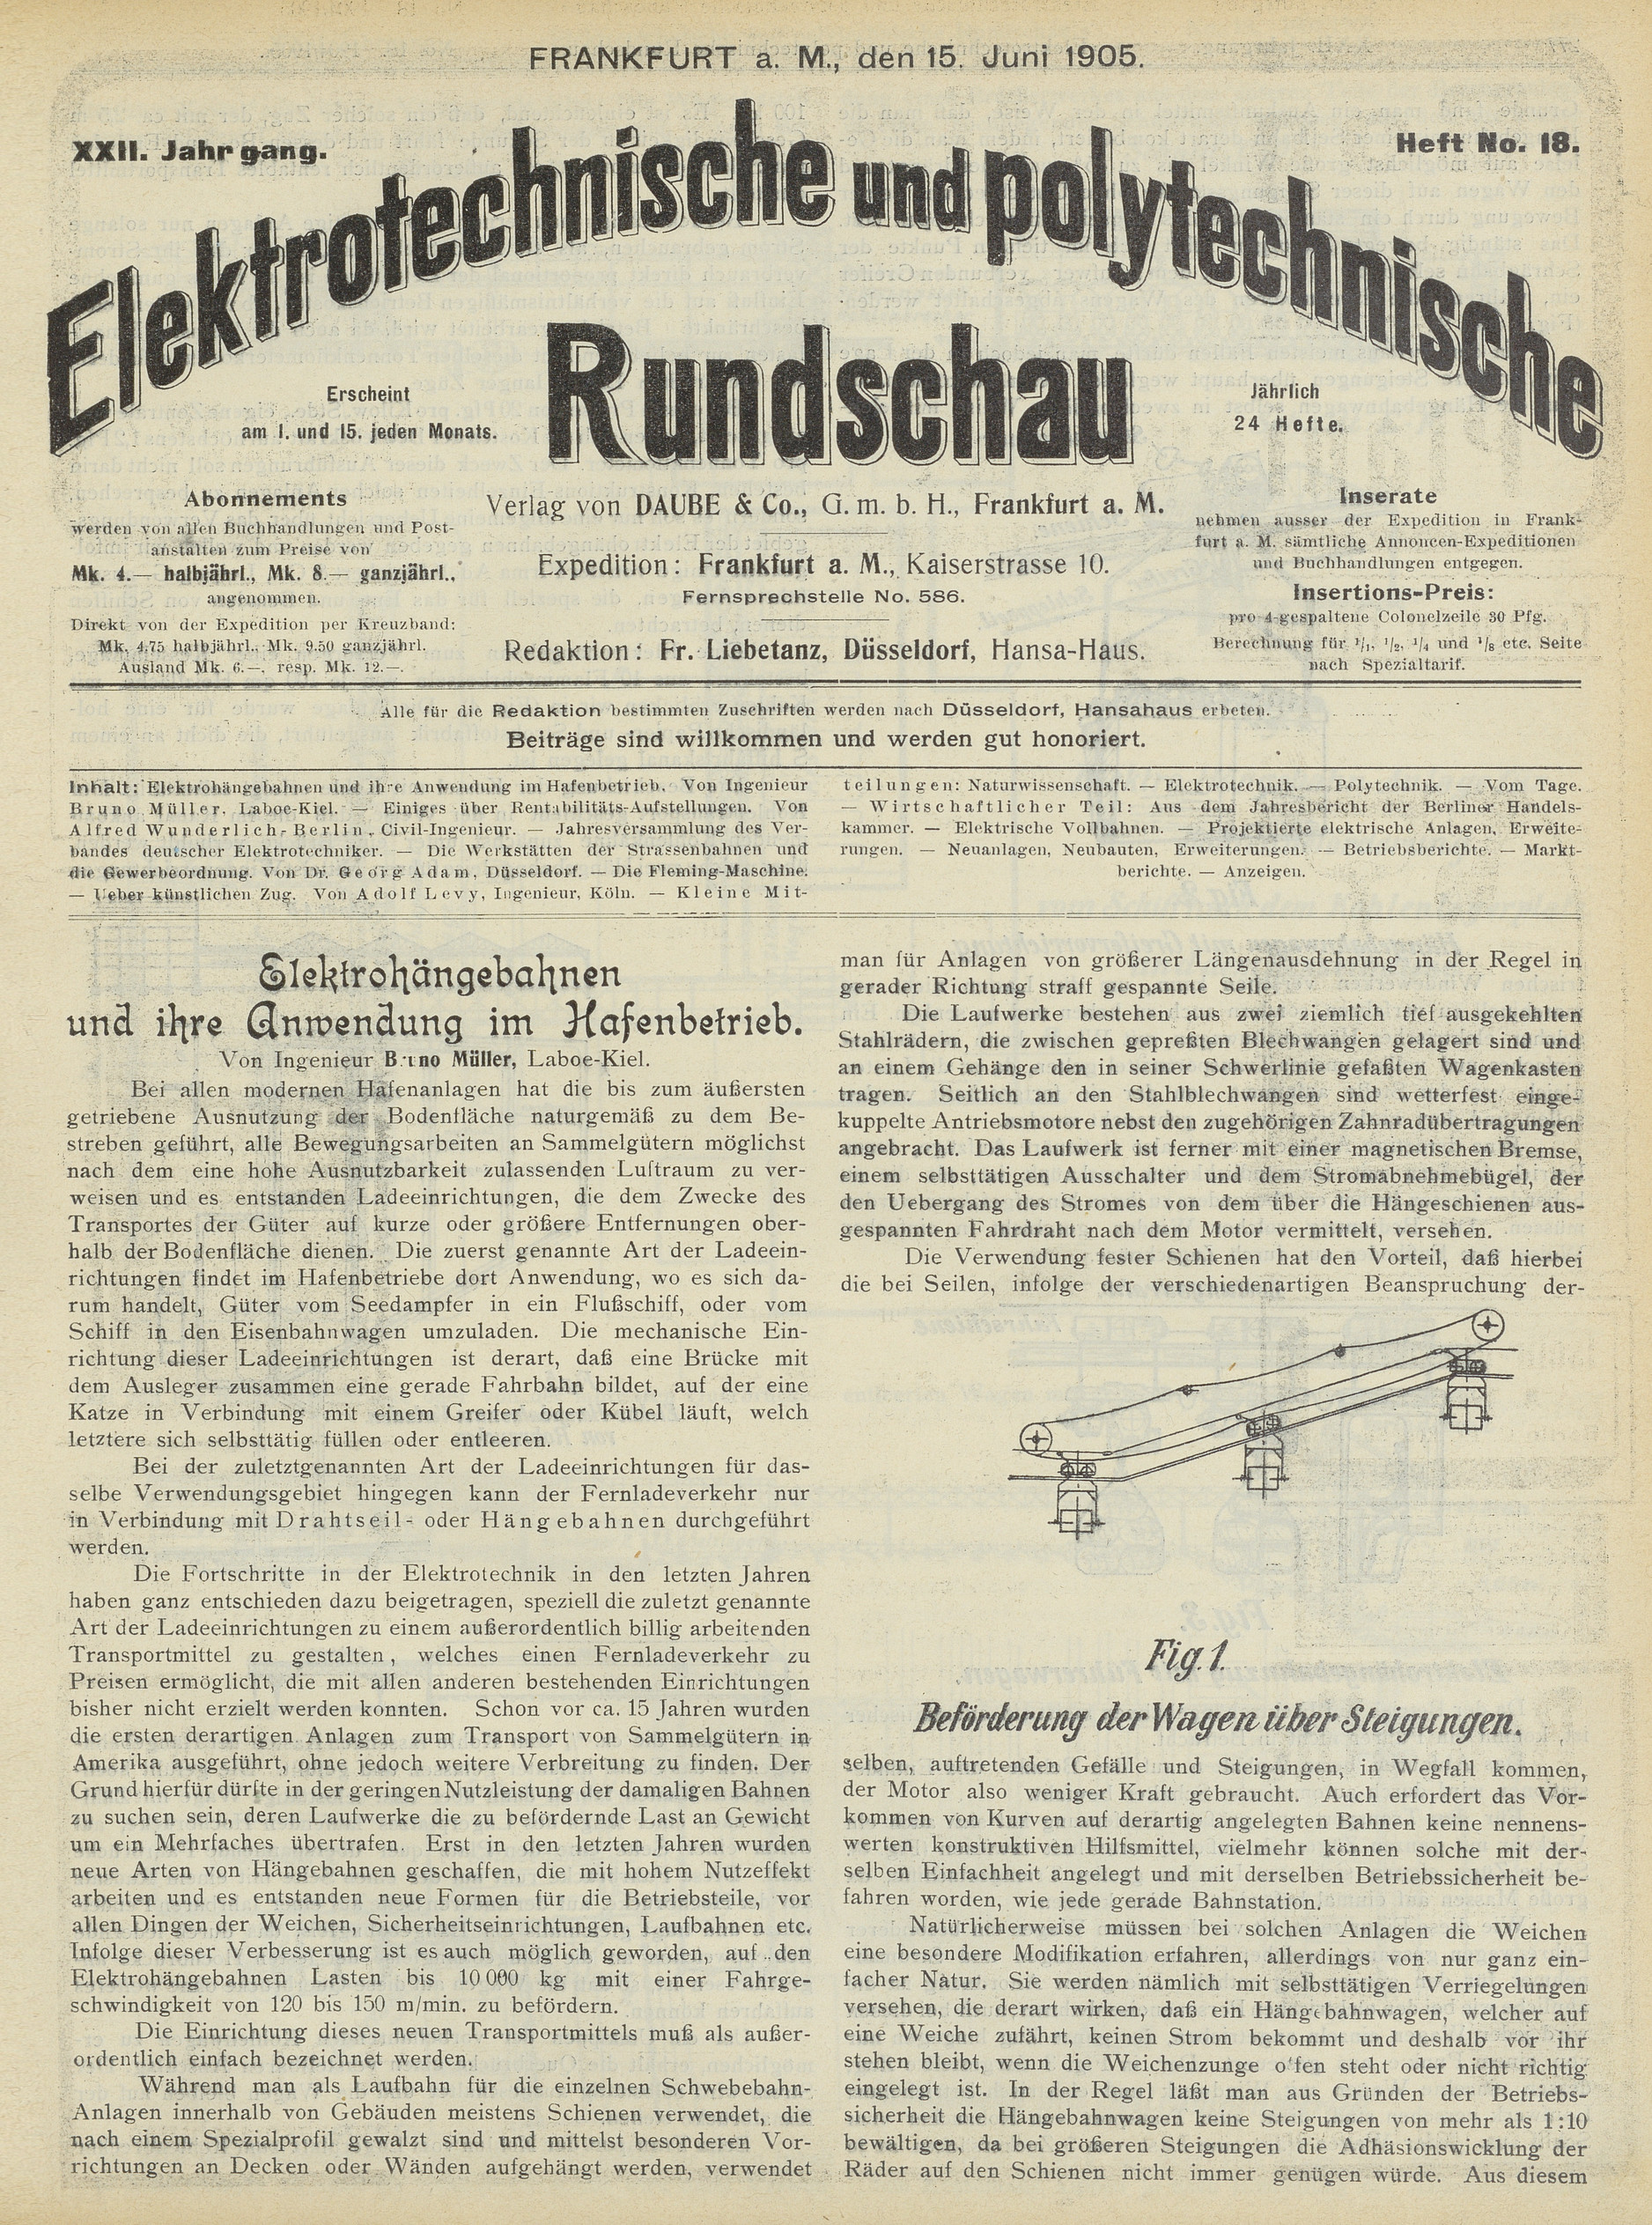 Elektrotechnische und polytechnische Rundschau, XXII. Jahrgang, Heft No. 18